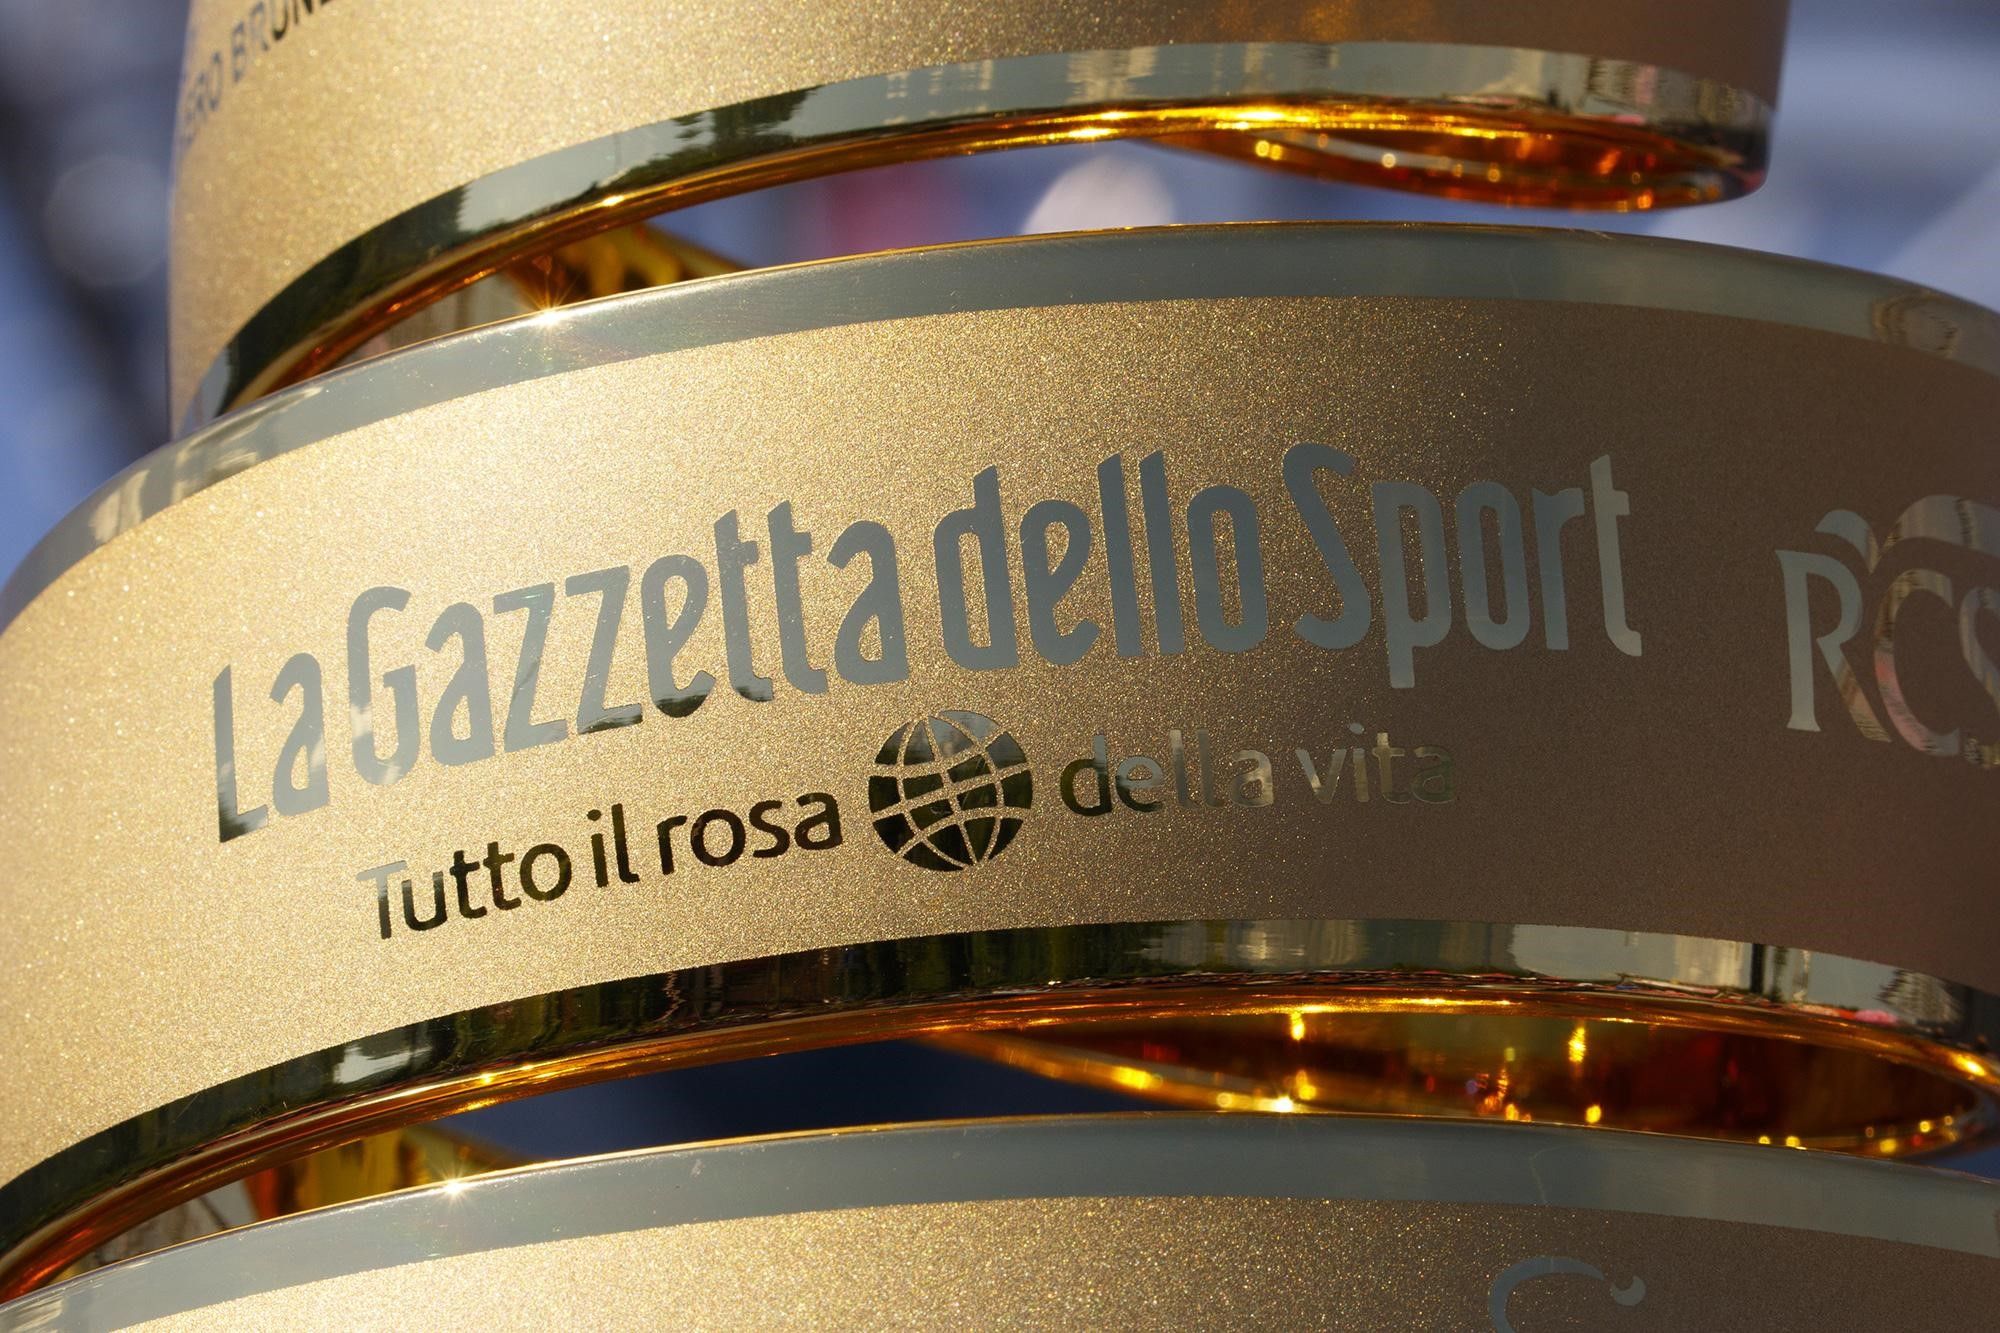 La Gazzetta dello Sport inscribed on the winner’s trophy